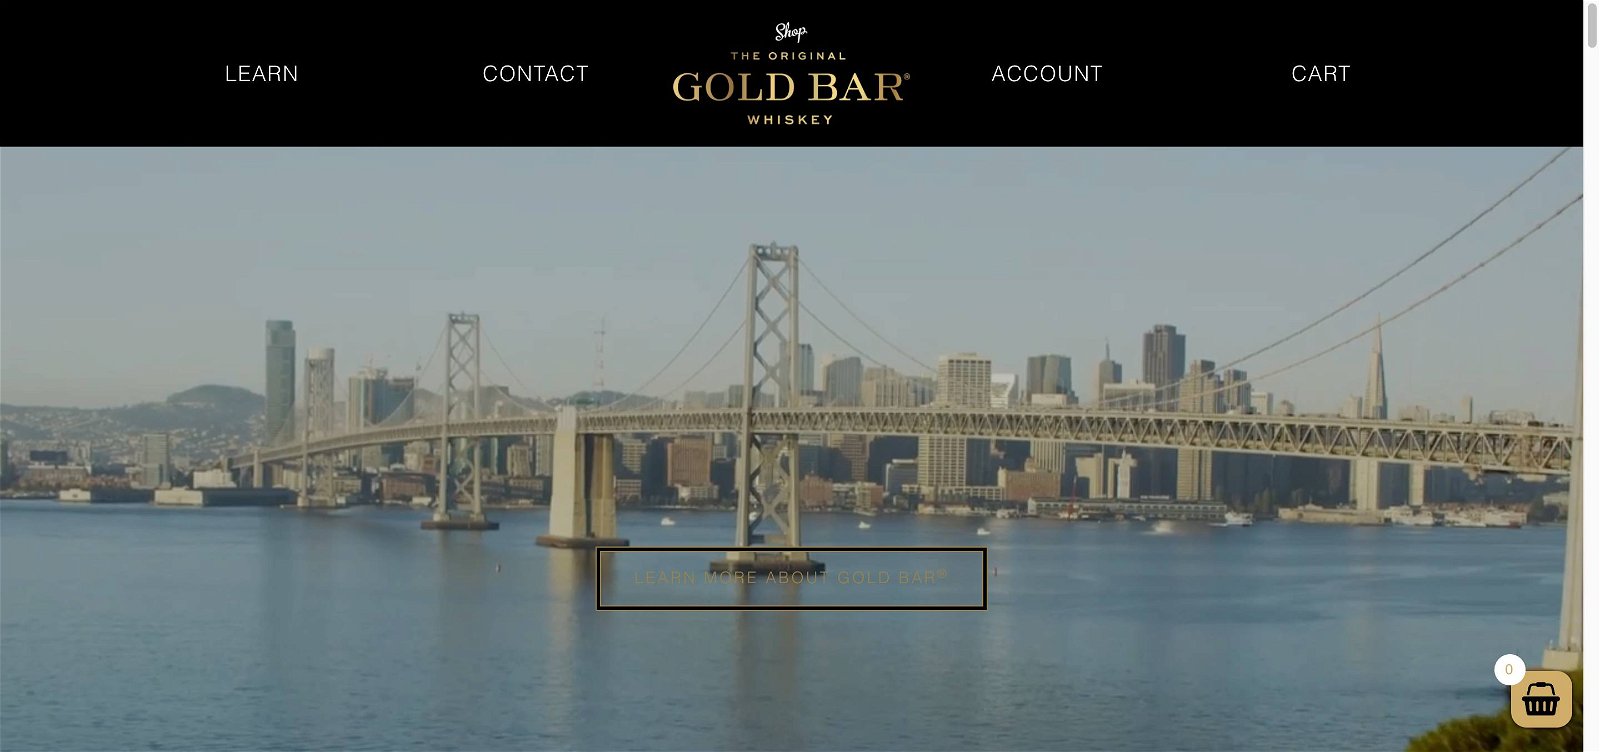 Goldbar whiskey.com